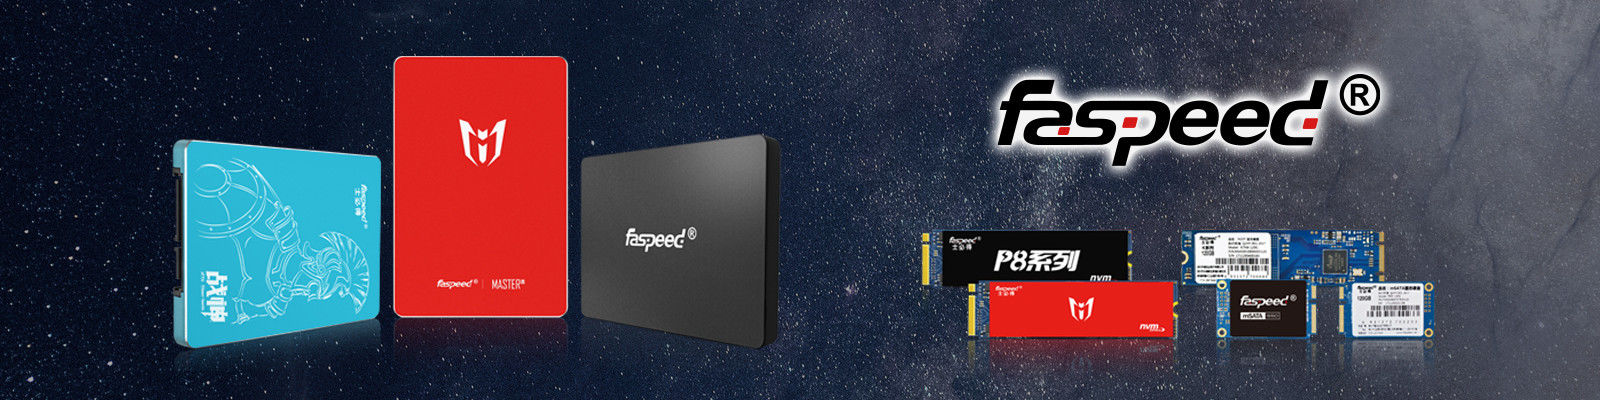 SSD de Faspeed